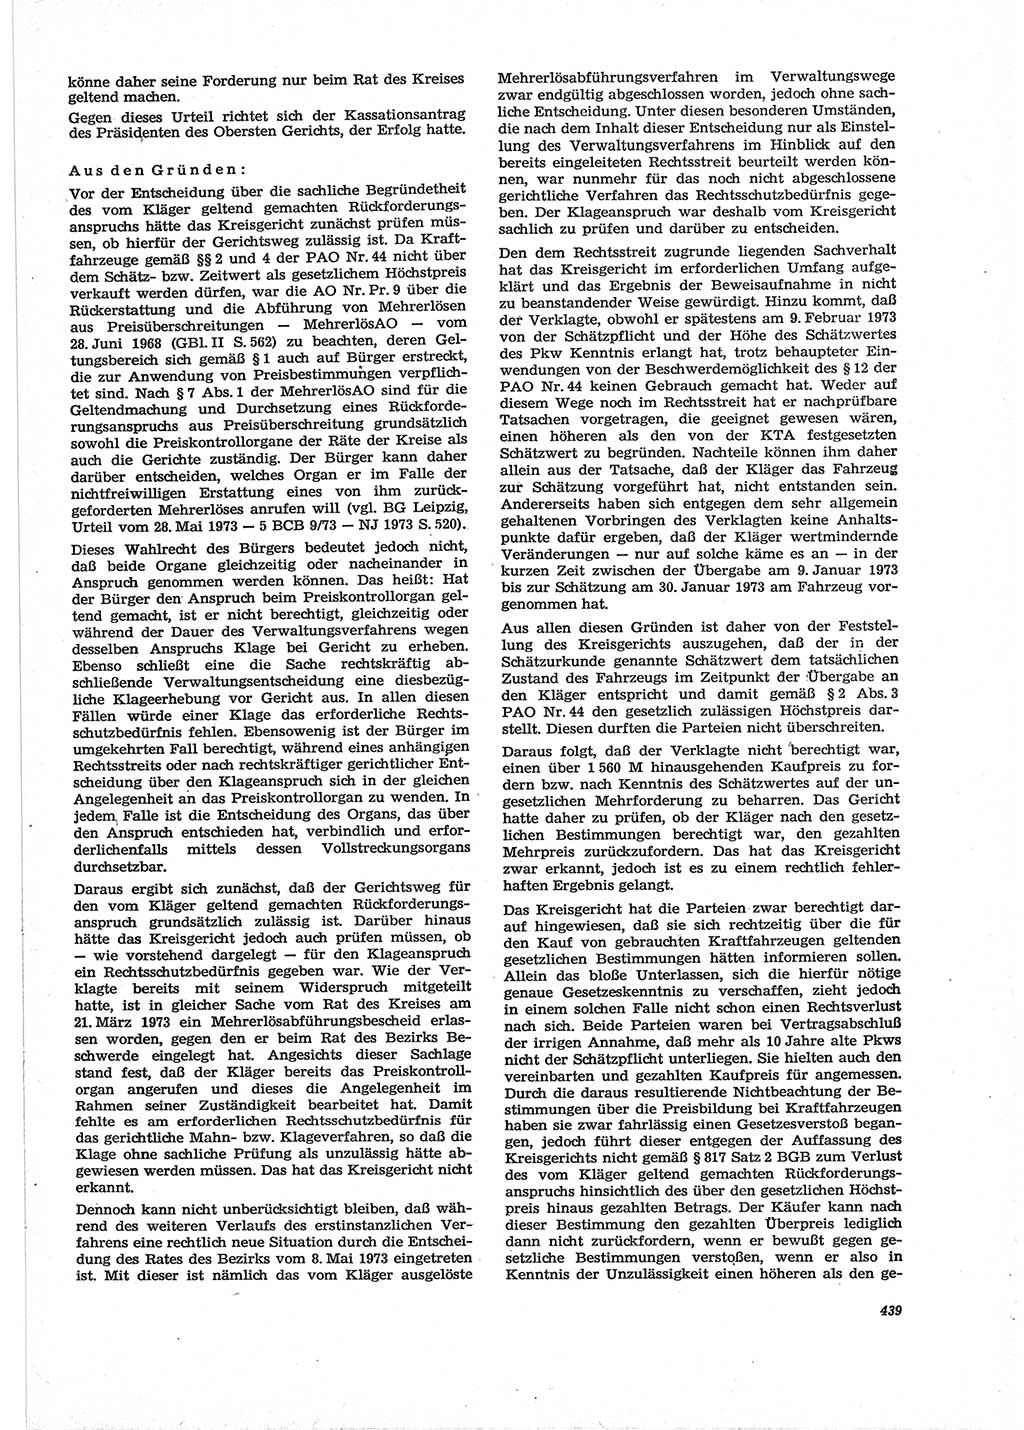 Neue Justiz (NJ), Zeitschrift für Recht und Rechtswissenschaft [Deutsche Demokratische Republik (DDR)], 28. Jahrgang 1974, Seite 439 (NJ DDR 1974, S. 439)